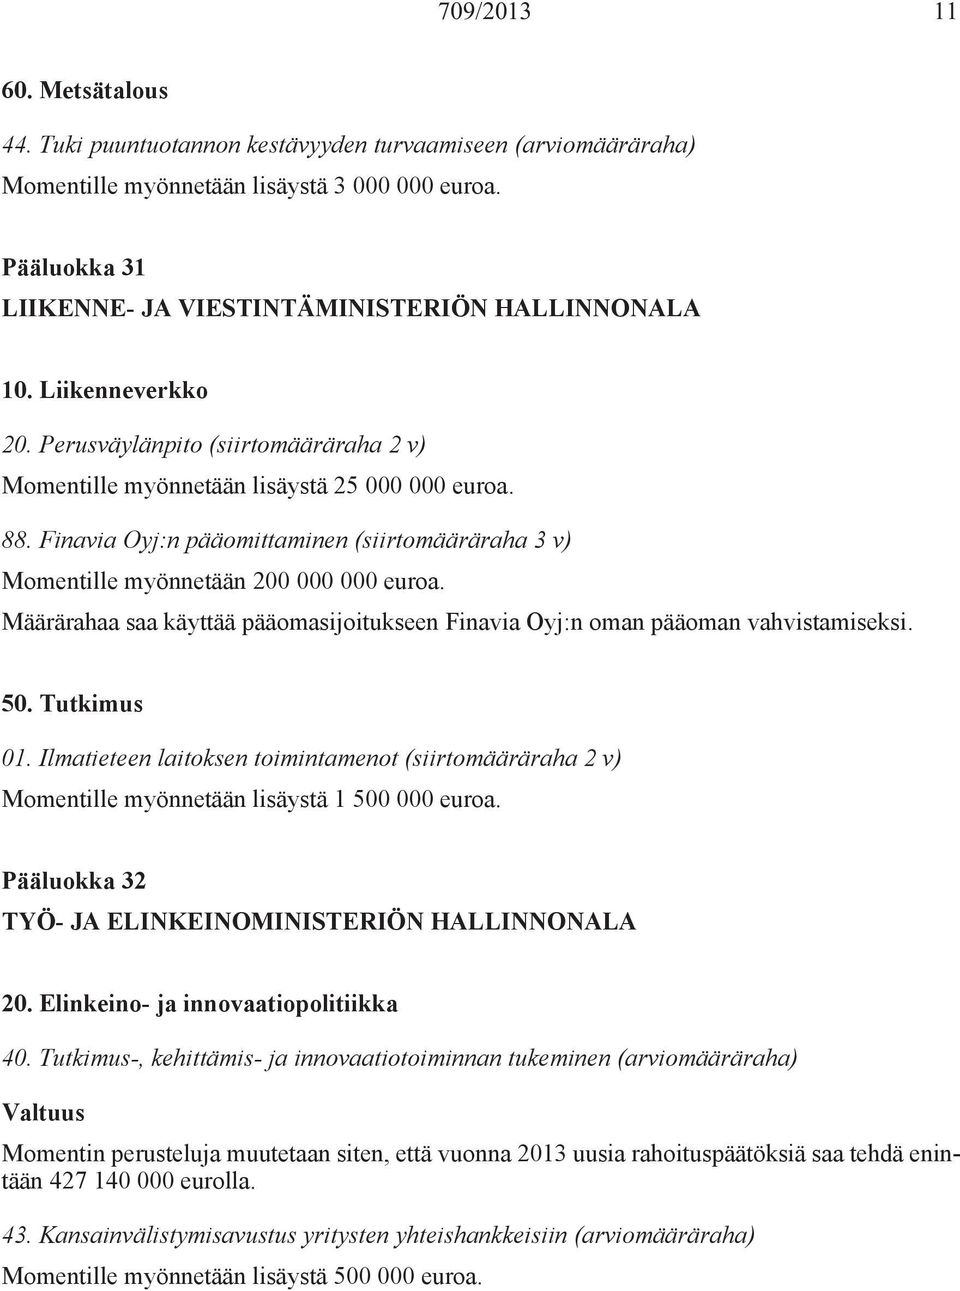 Finavia Oyj:n pääomittaminen (siirtomääräraha 3 v) Momentille myönnetään 200 000 000 euroa. Määrärahaa saa käyttää pääomasijoitukseen Finavia Oyj:n oman pääoman vahvistamiseksi. 50. Tutkimus 01.